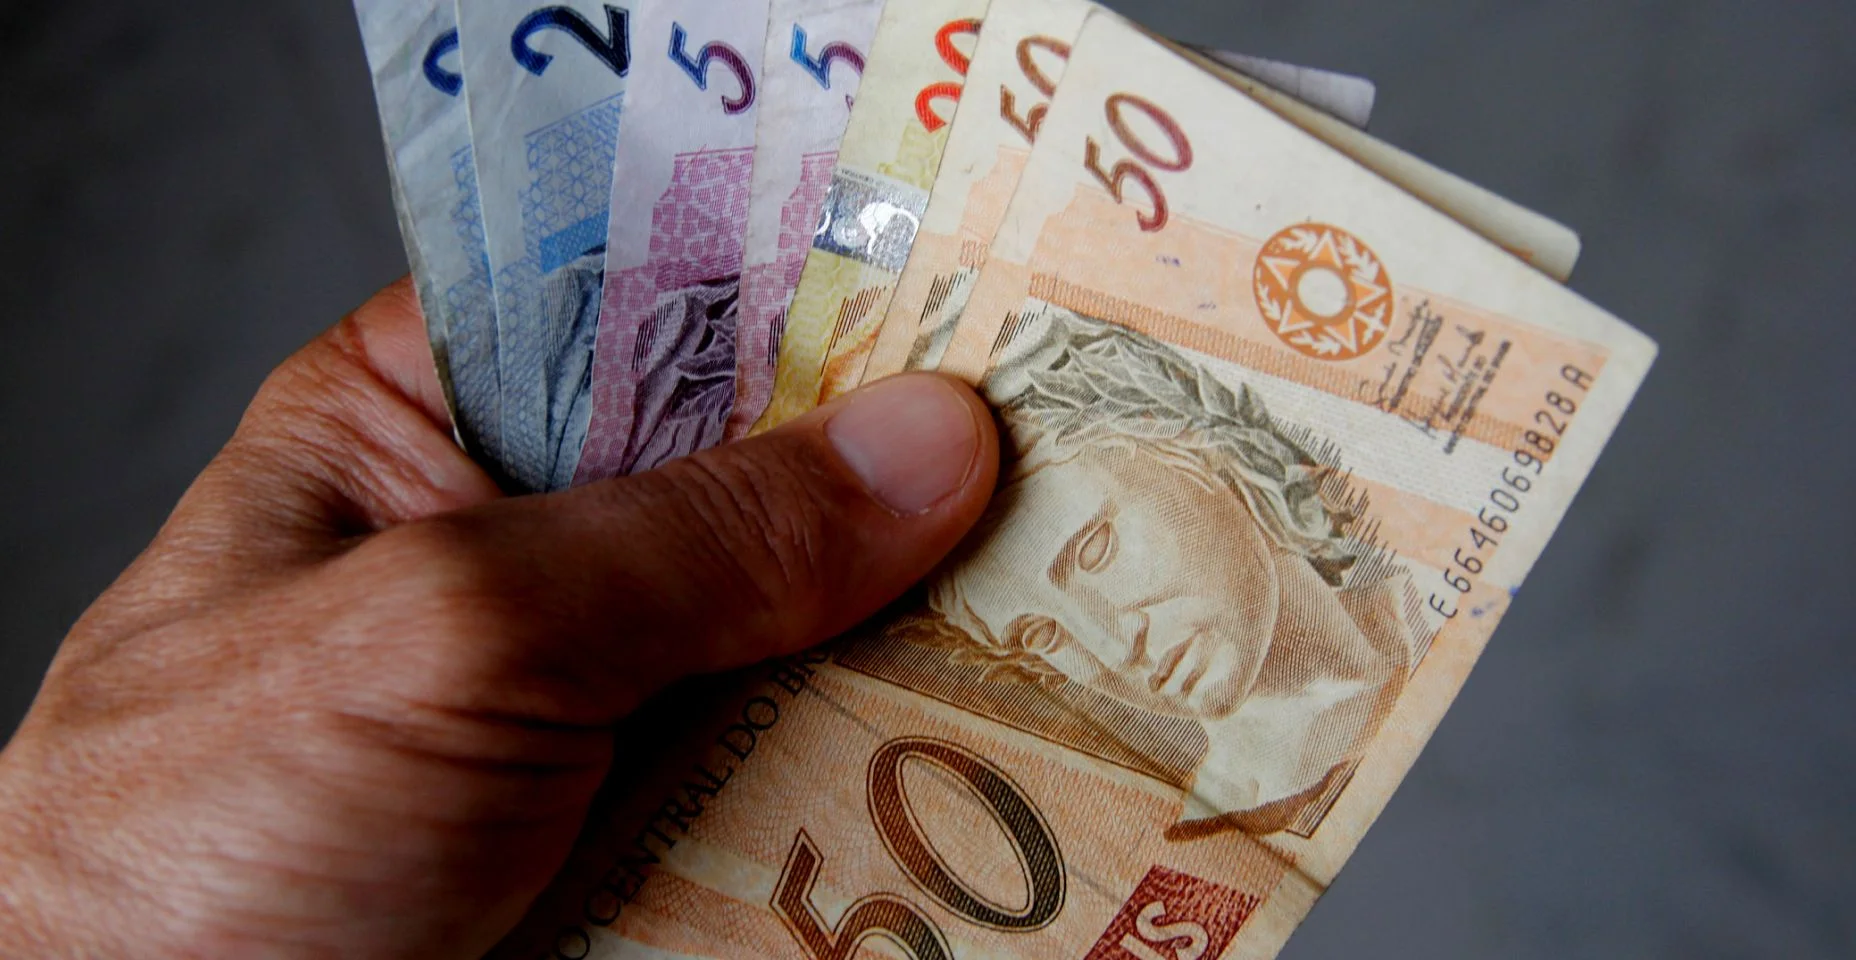 Dinheiro real circulando no Brasil